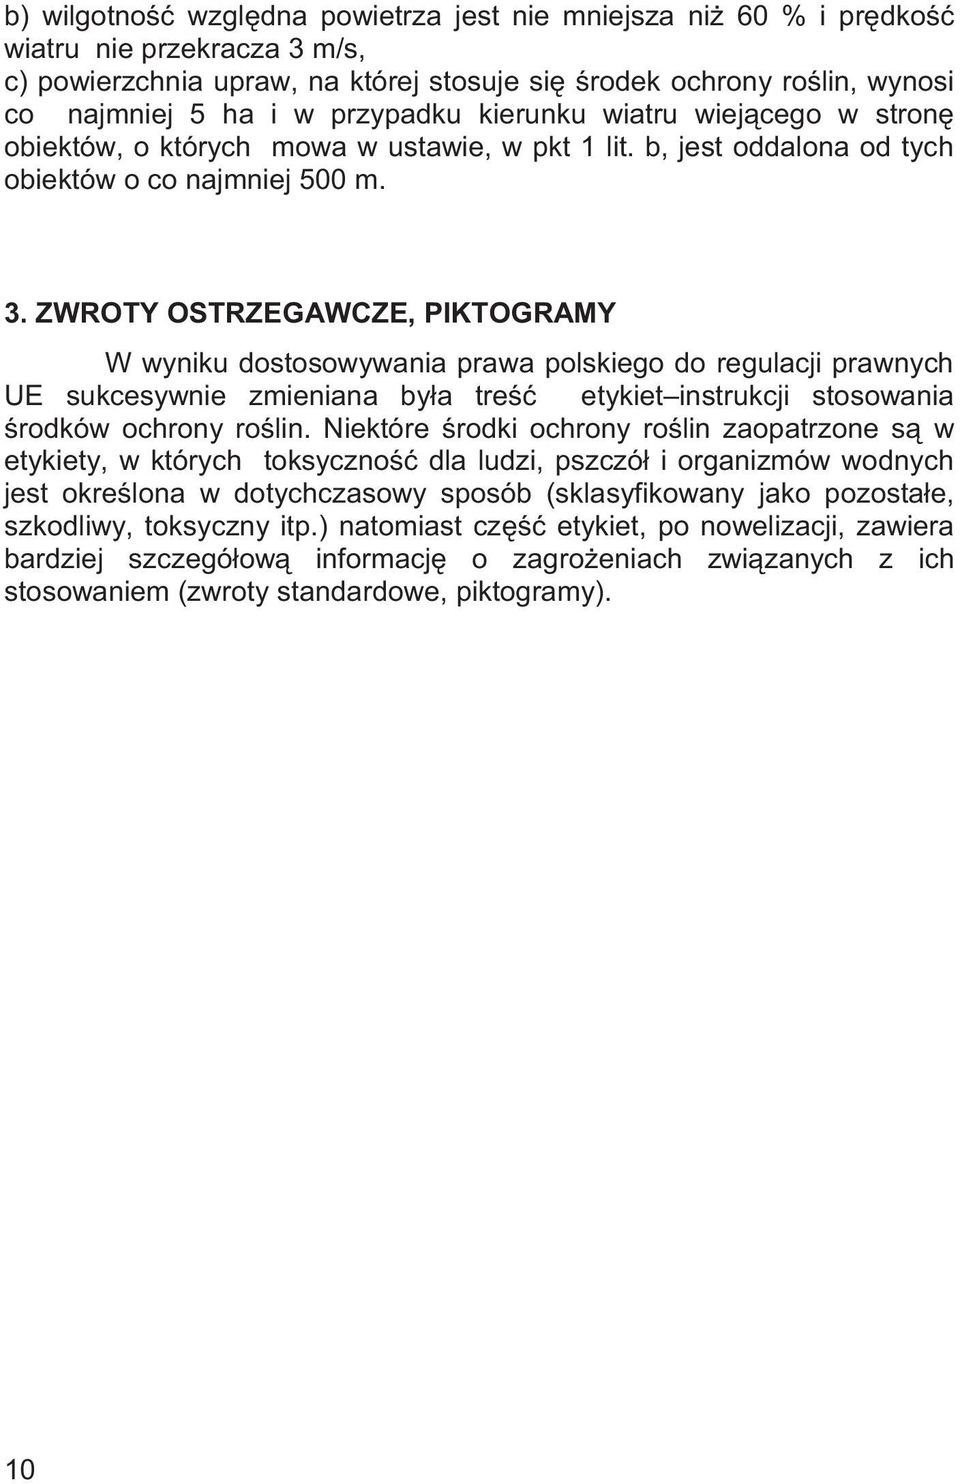 ZWROTY OSTRZEGAWCZE, PIKTOGRAMY W wyniku dostosowywania prawa polskiego do regulacji prawnych UE sukcesywnie zmieniana by a tre etykiet instrukcji stosowania rodków ochrony ro lin.